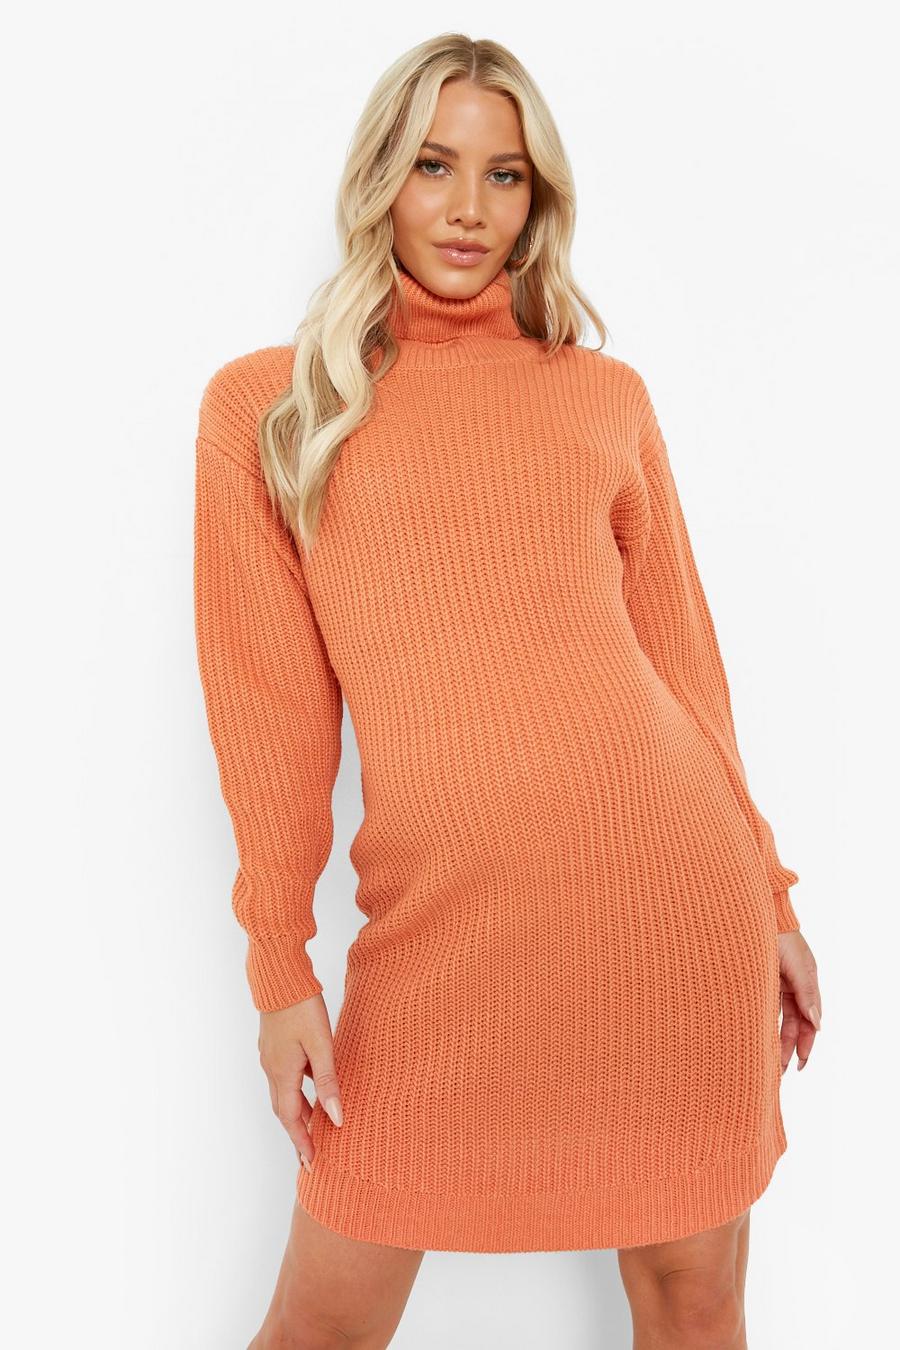 ספייס naranja שמלת סוודר מבד ממוחזר עם צווארון נגלגל, להיריון